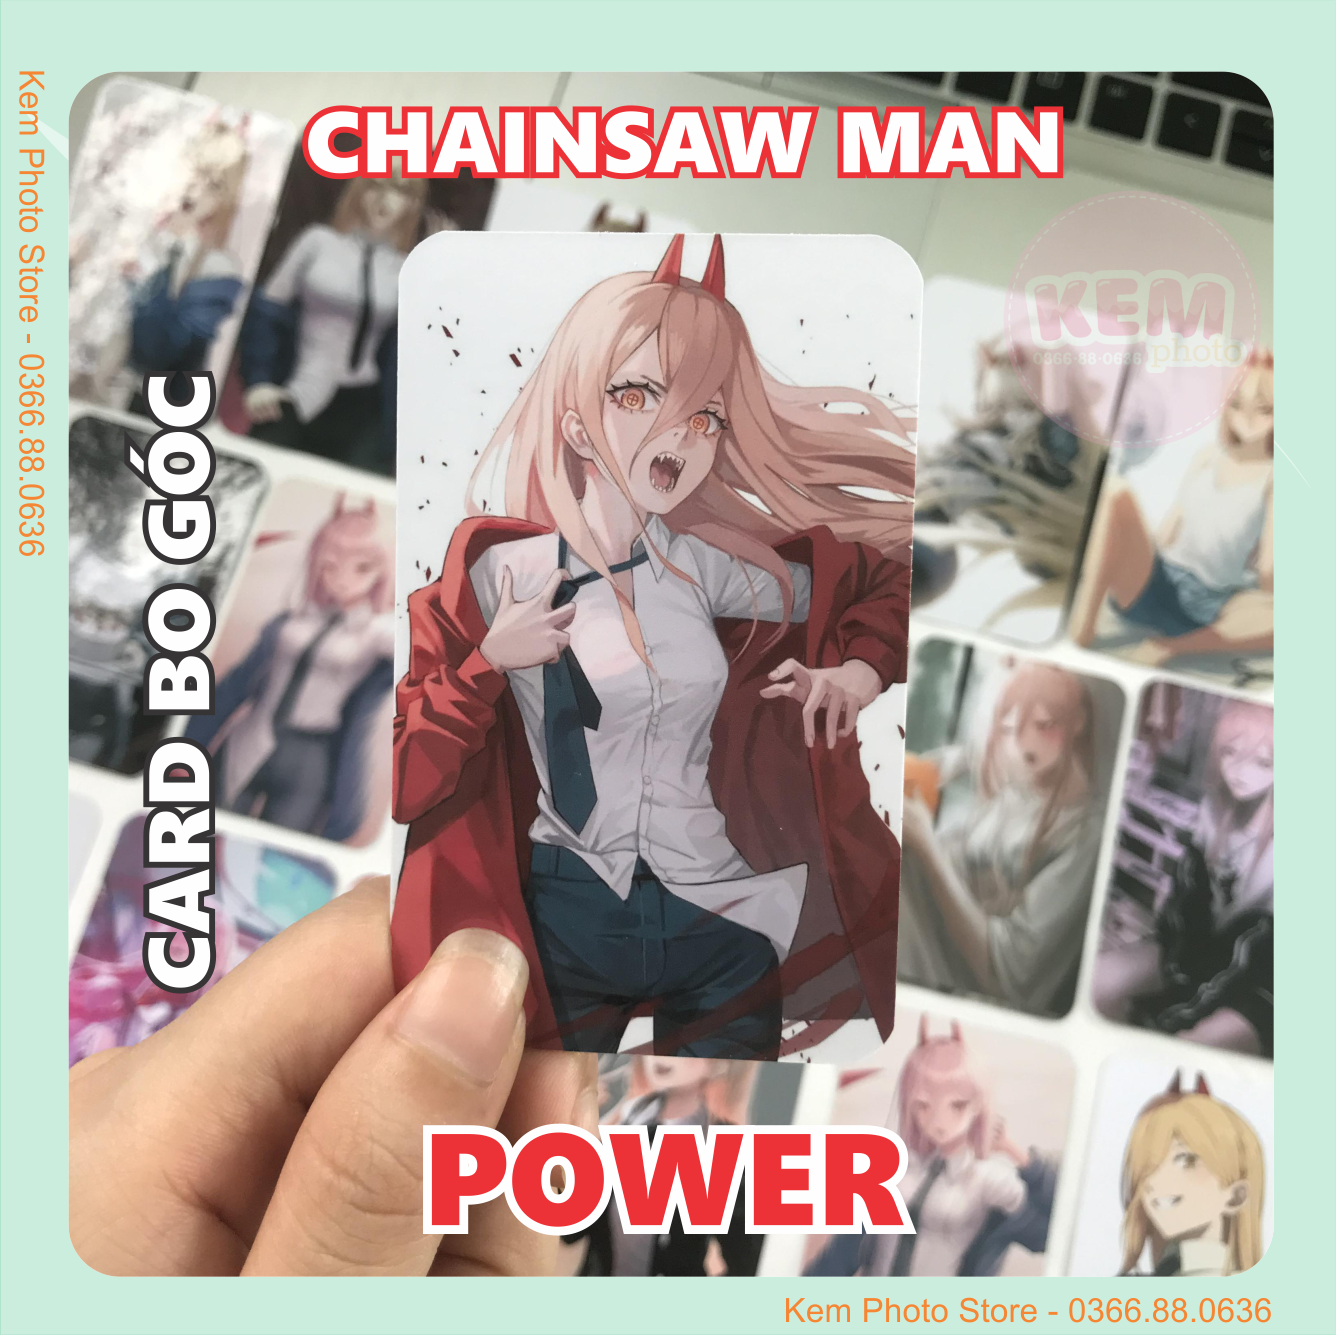 Anime Card Nhựa: Sưu tập những Anime Card Nhựa là sở thích khá phổ biến ở giới trẻ hiện nay. Với các hình ảnh sắc nét và chất liệu bền chắc, các Anime Card này sẽ mang lại trải nghiệm tuyệt vời cho các bạn yêu thích Anime.